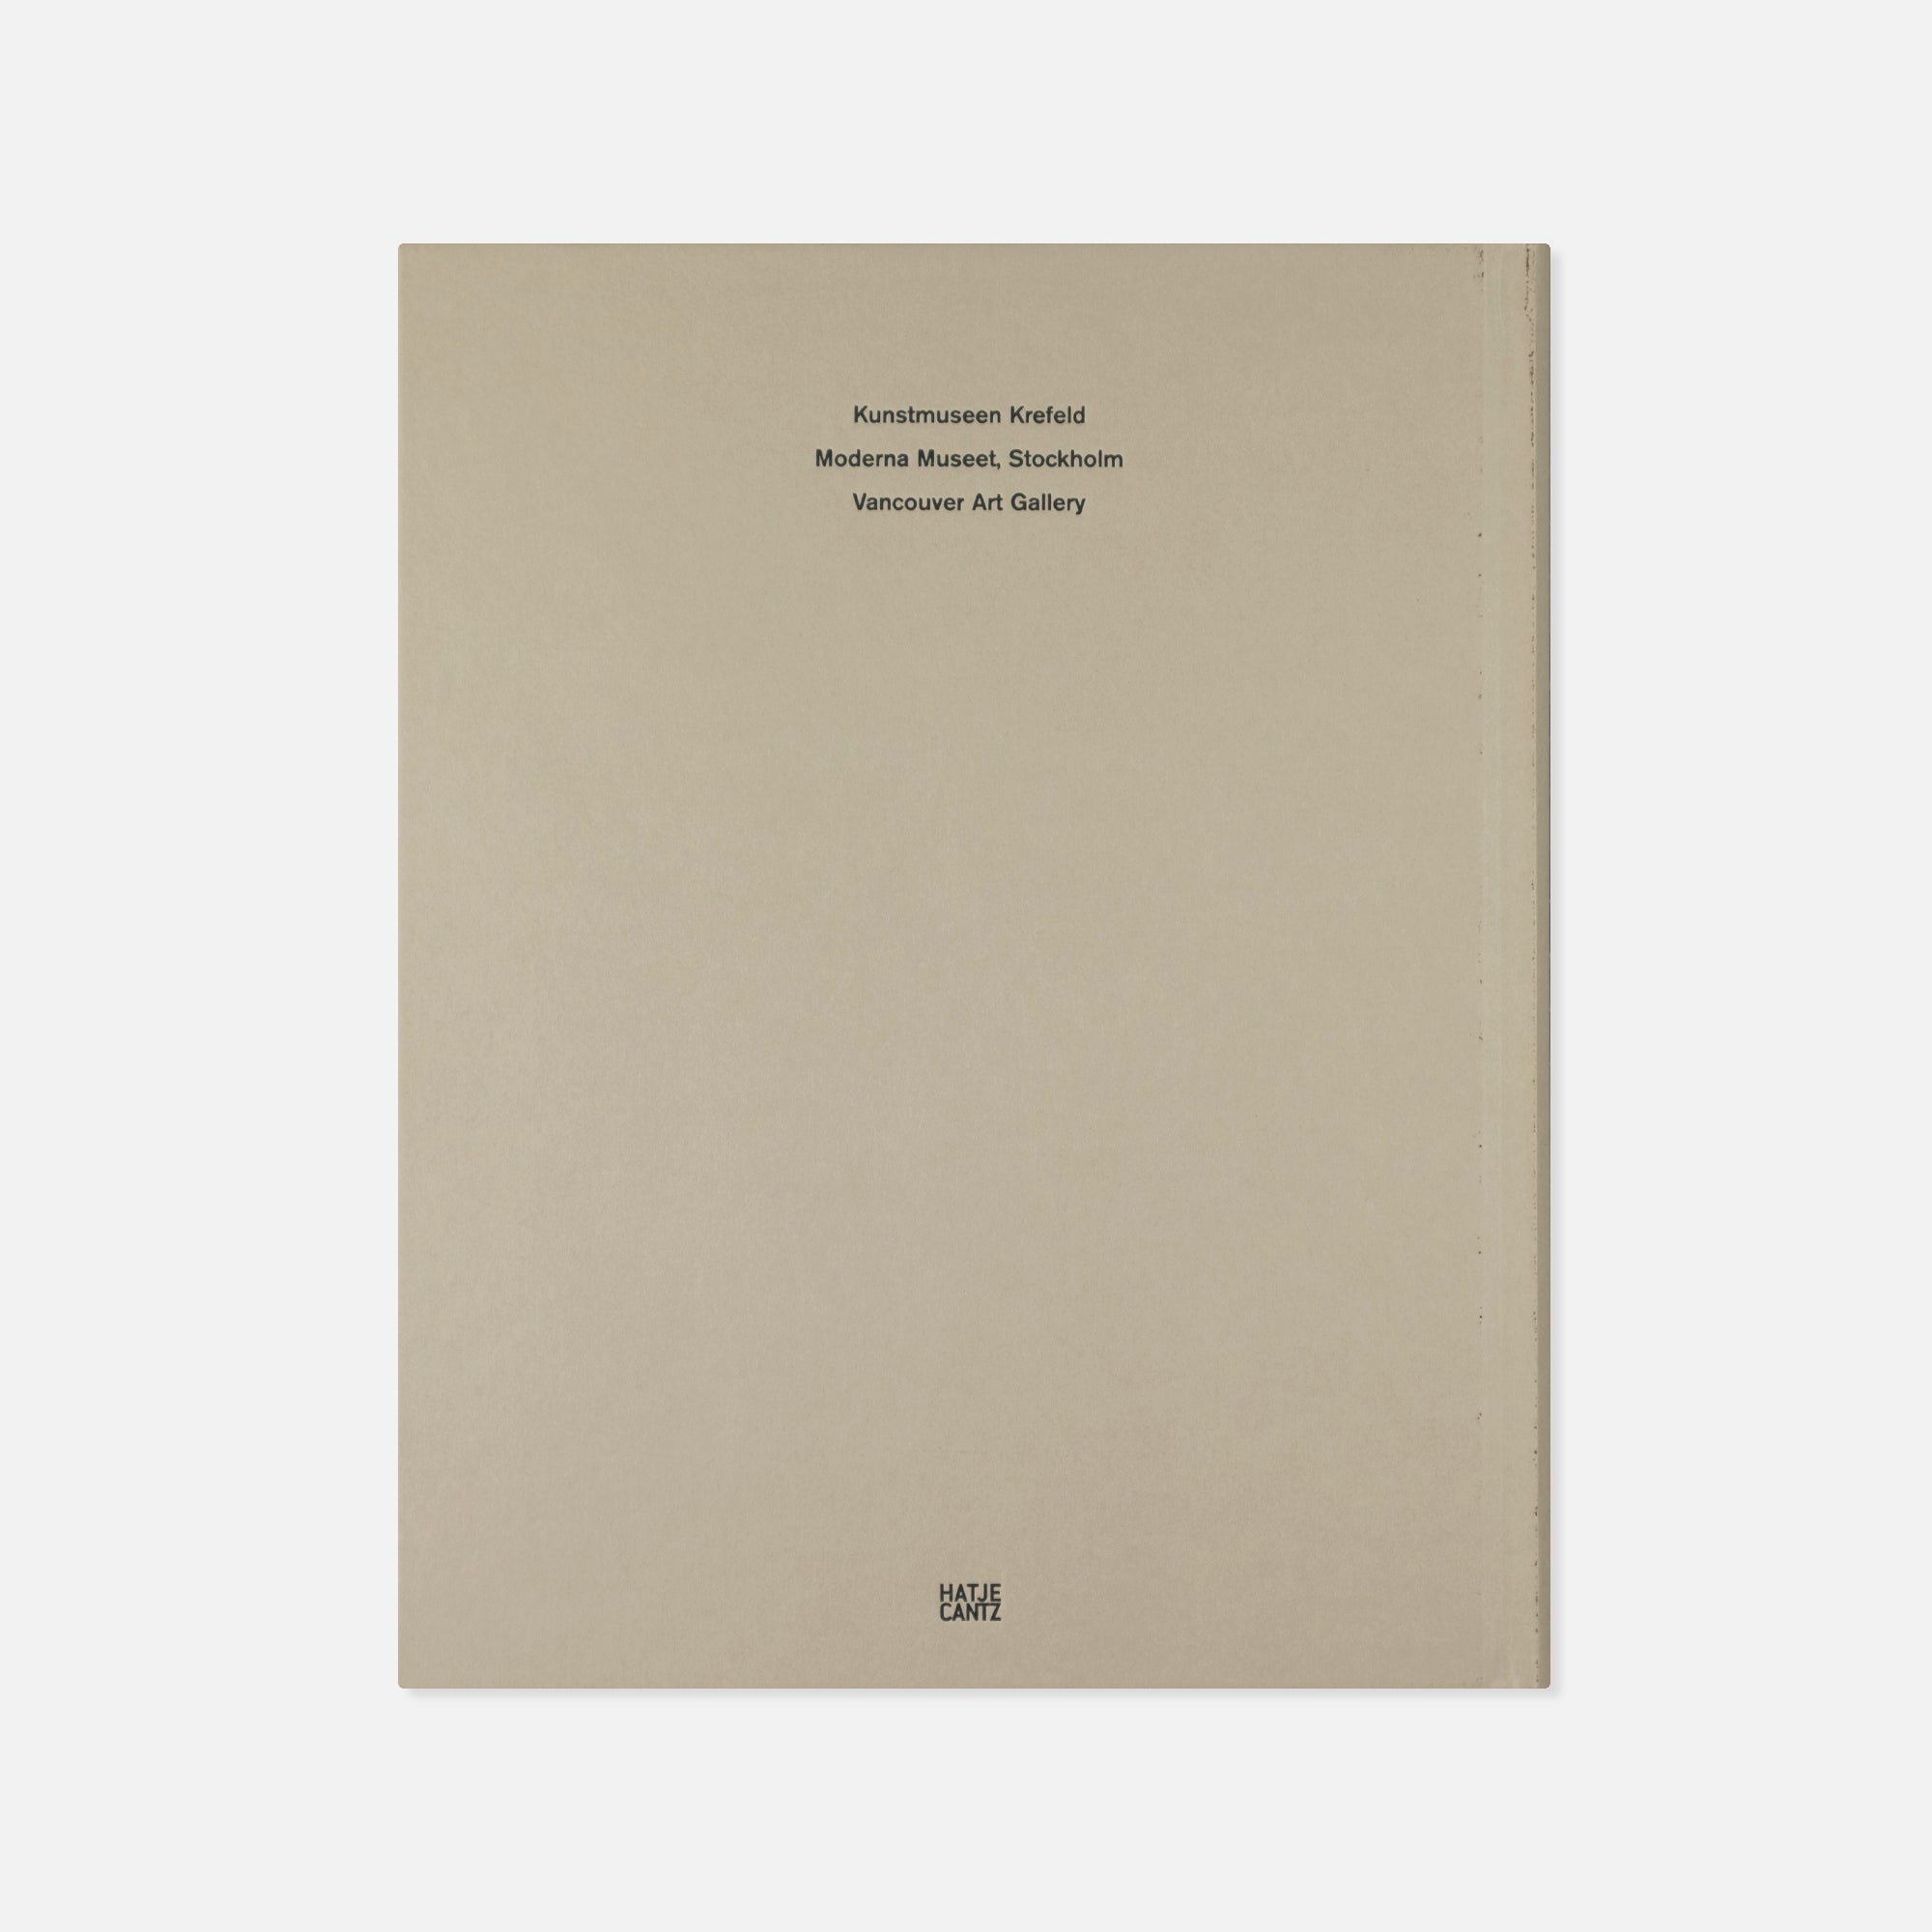 Andreas Gursky — Werke • Works 80-08